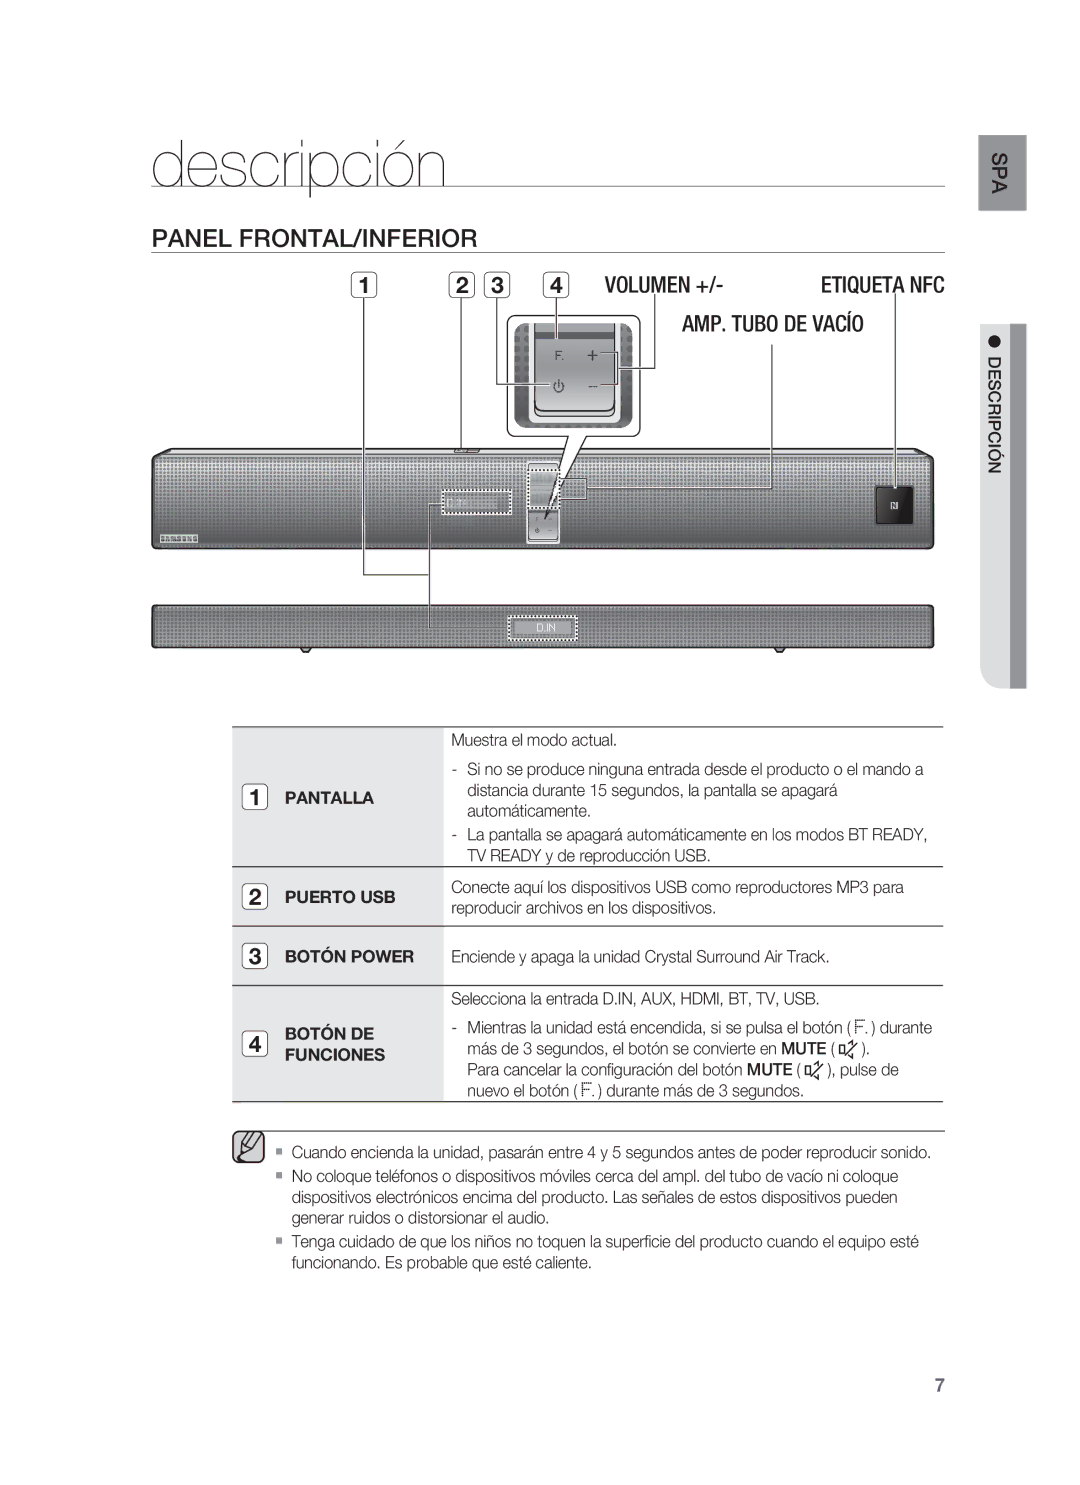 Samsung HW-F850/ZF manual Descripción, Panel FRONTAL/INFERIOR, Etiqueta NFC, Puerto USB, Botón DE Funciones 